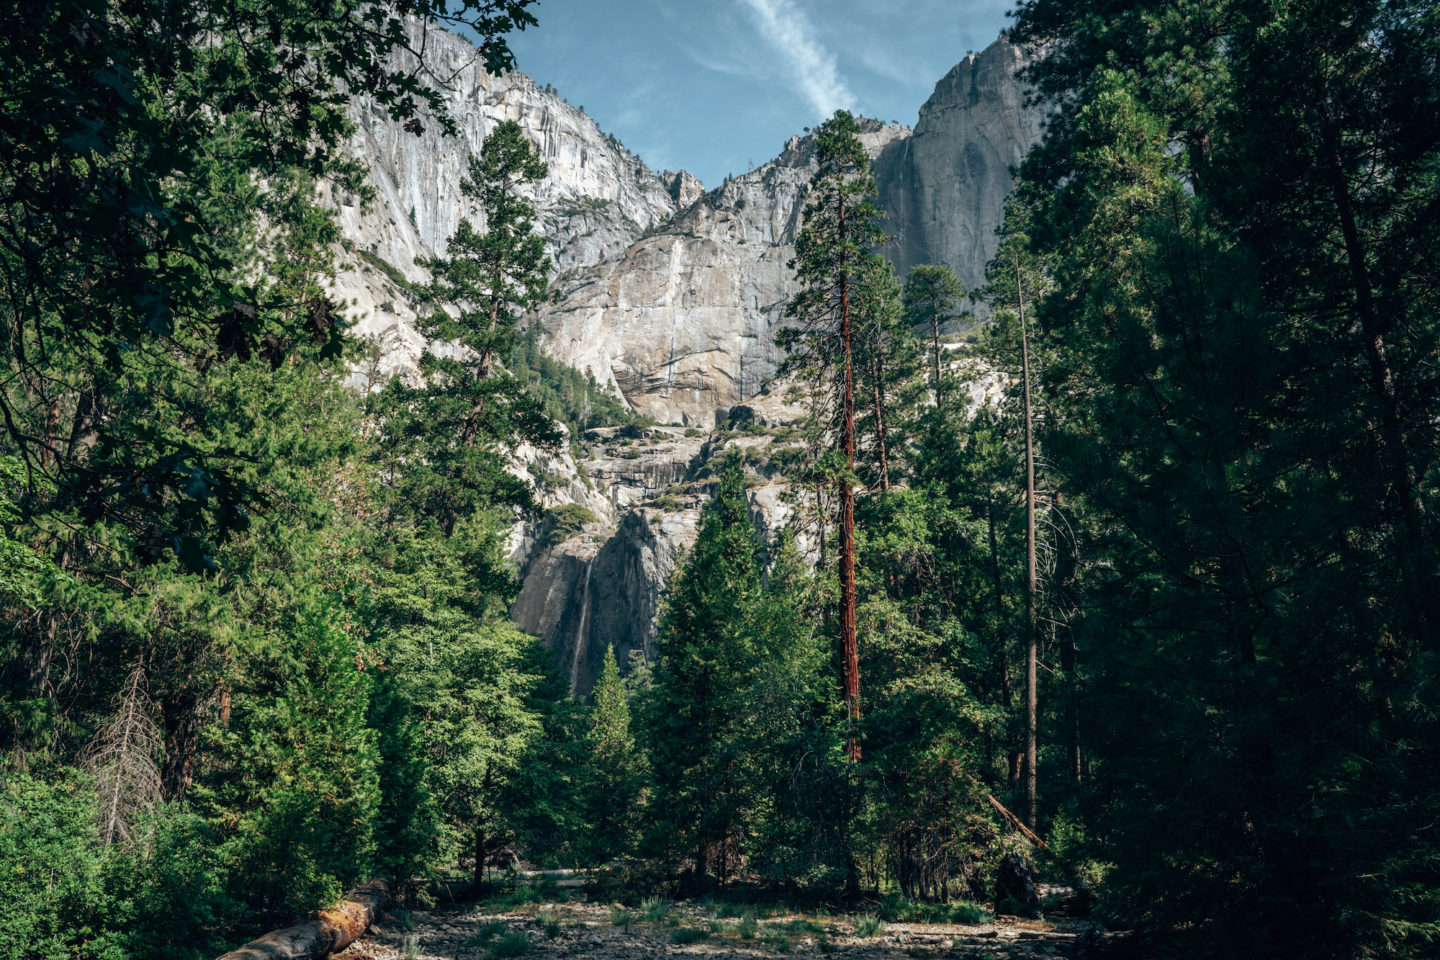 Lower Yosemite Falls - Yosemite National Park, California